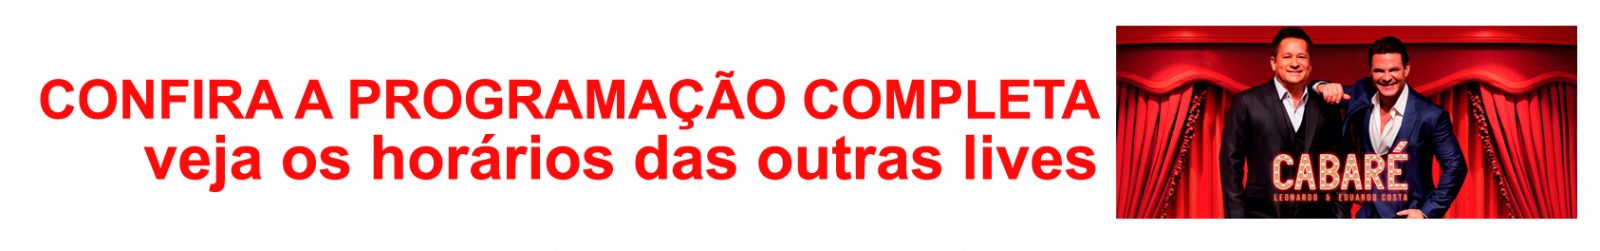 CABARÉ EM CASA - LIVE É ANUNCIADA PARA DIA 01 DE MAIO - News Rondônia